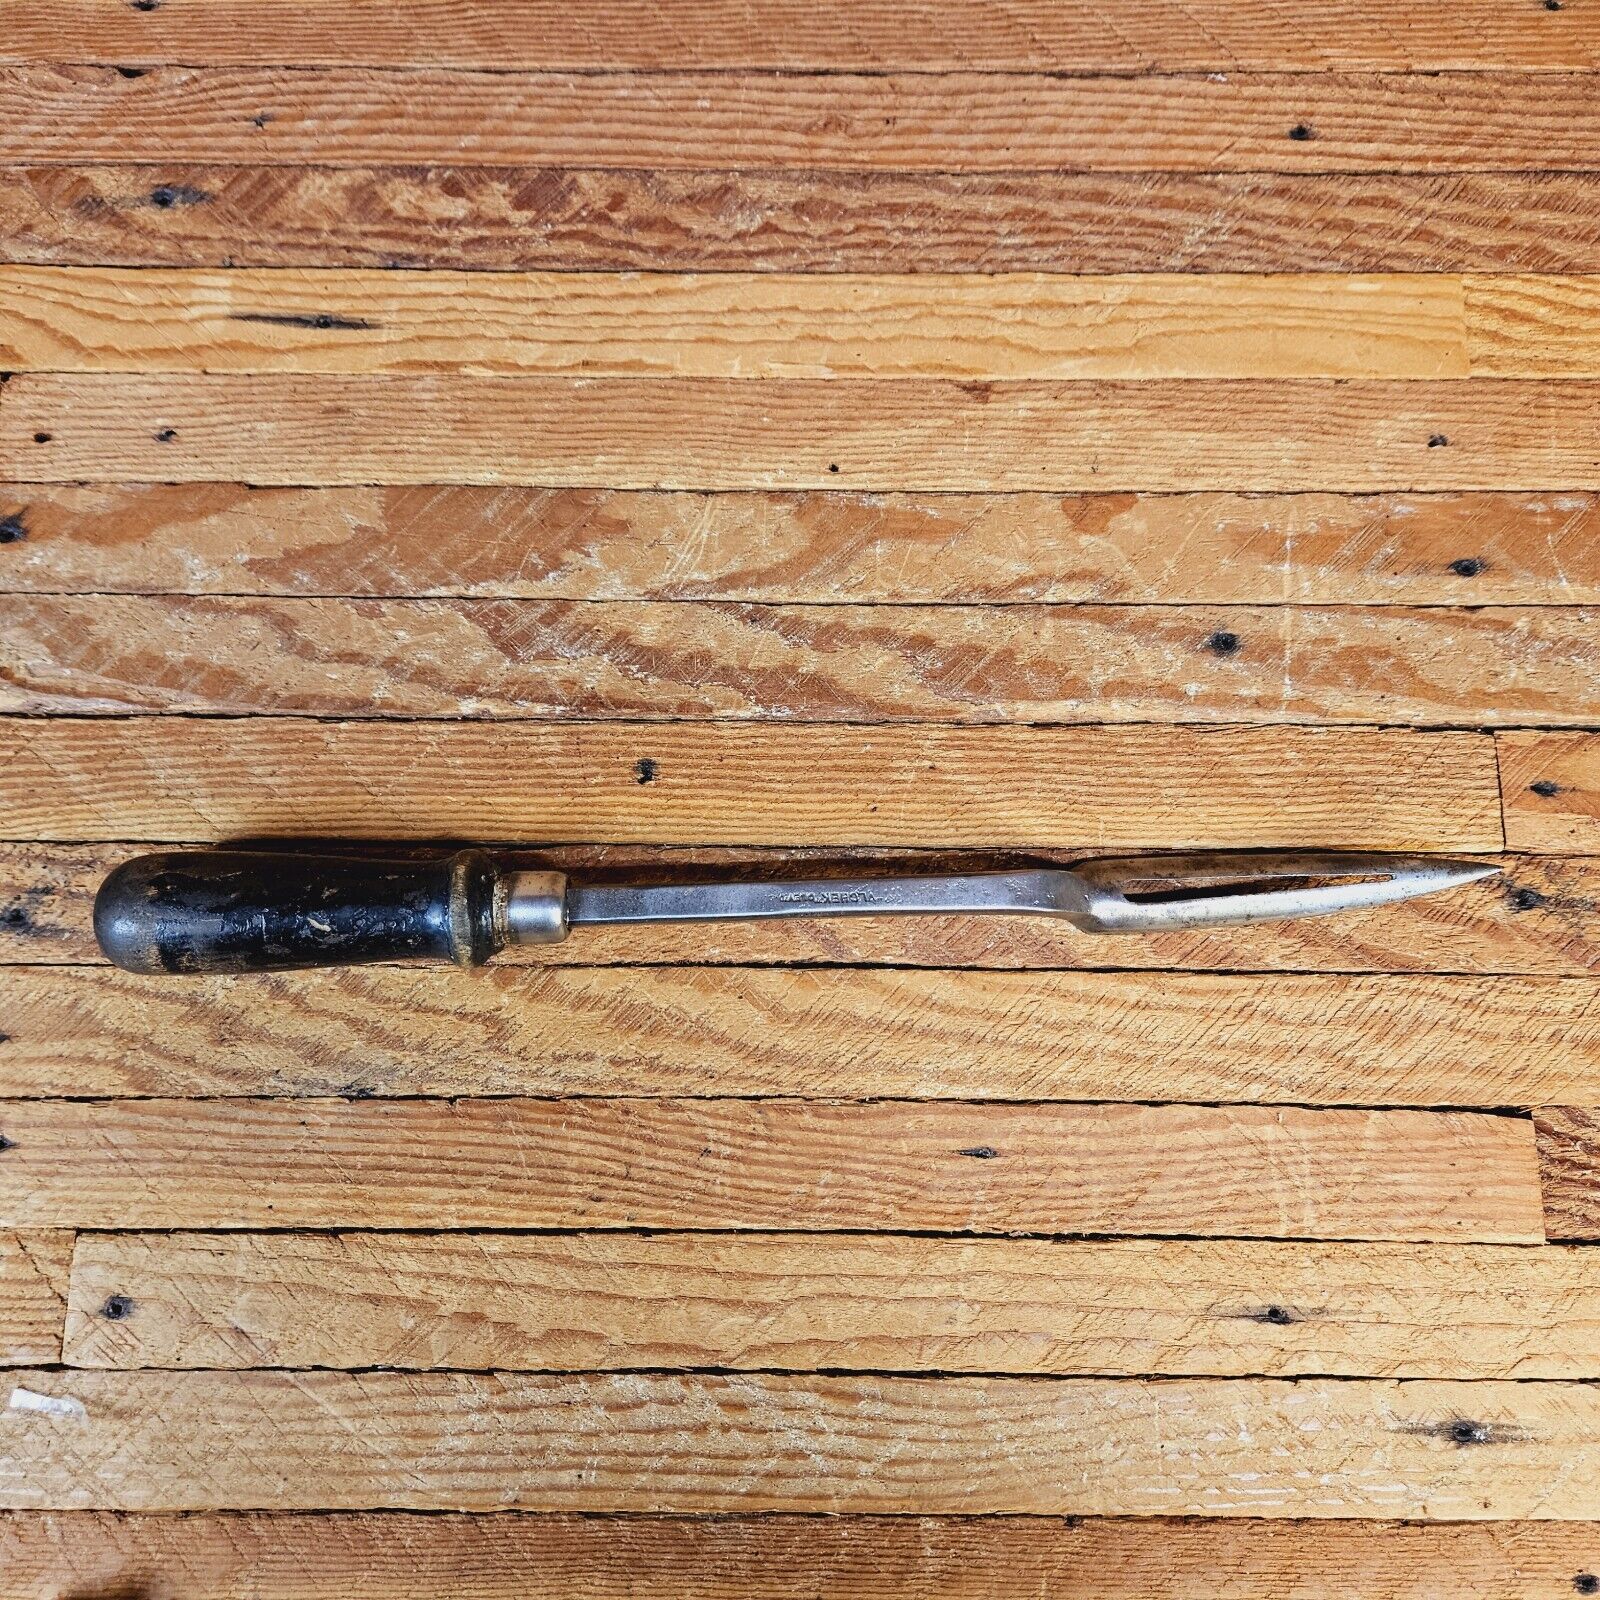 Antique Vlchek Tool Co Babbitt Bearing Scraper w Wooden Handle Cleveland OH USA